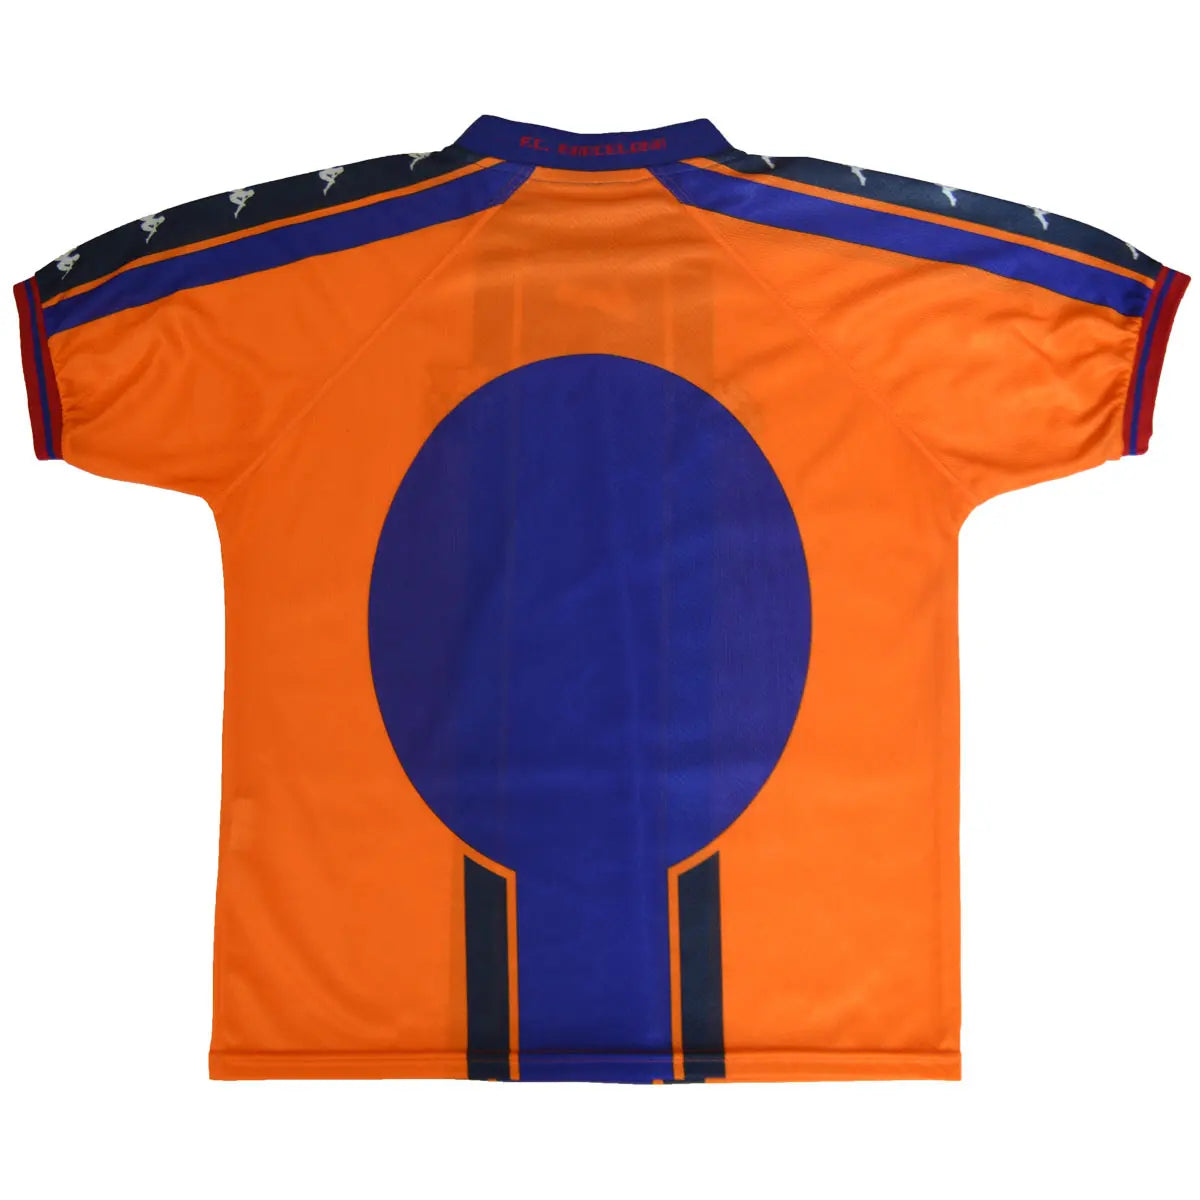 Maillot de foot extérieur rétro/vintage authentique du Barca Orange, bleu et noir de la saison 1997-1998 de dos